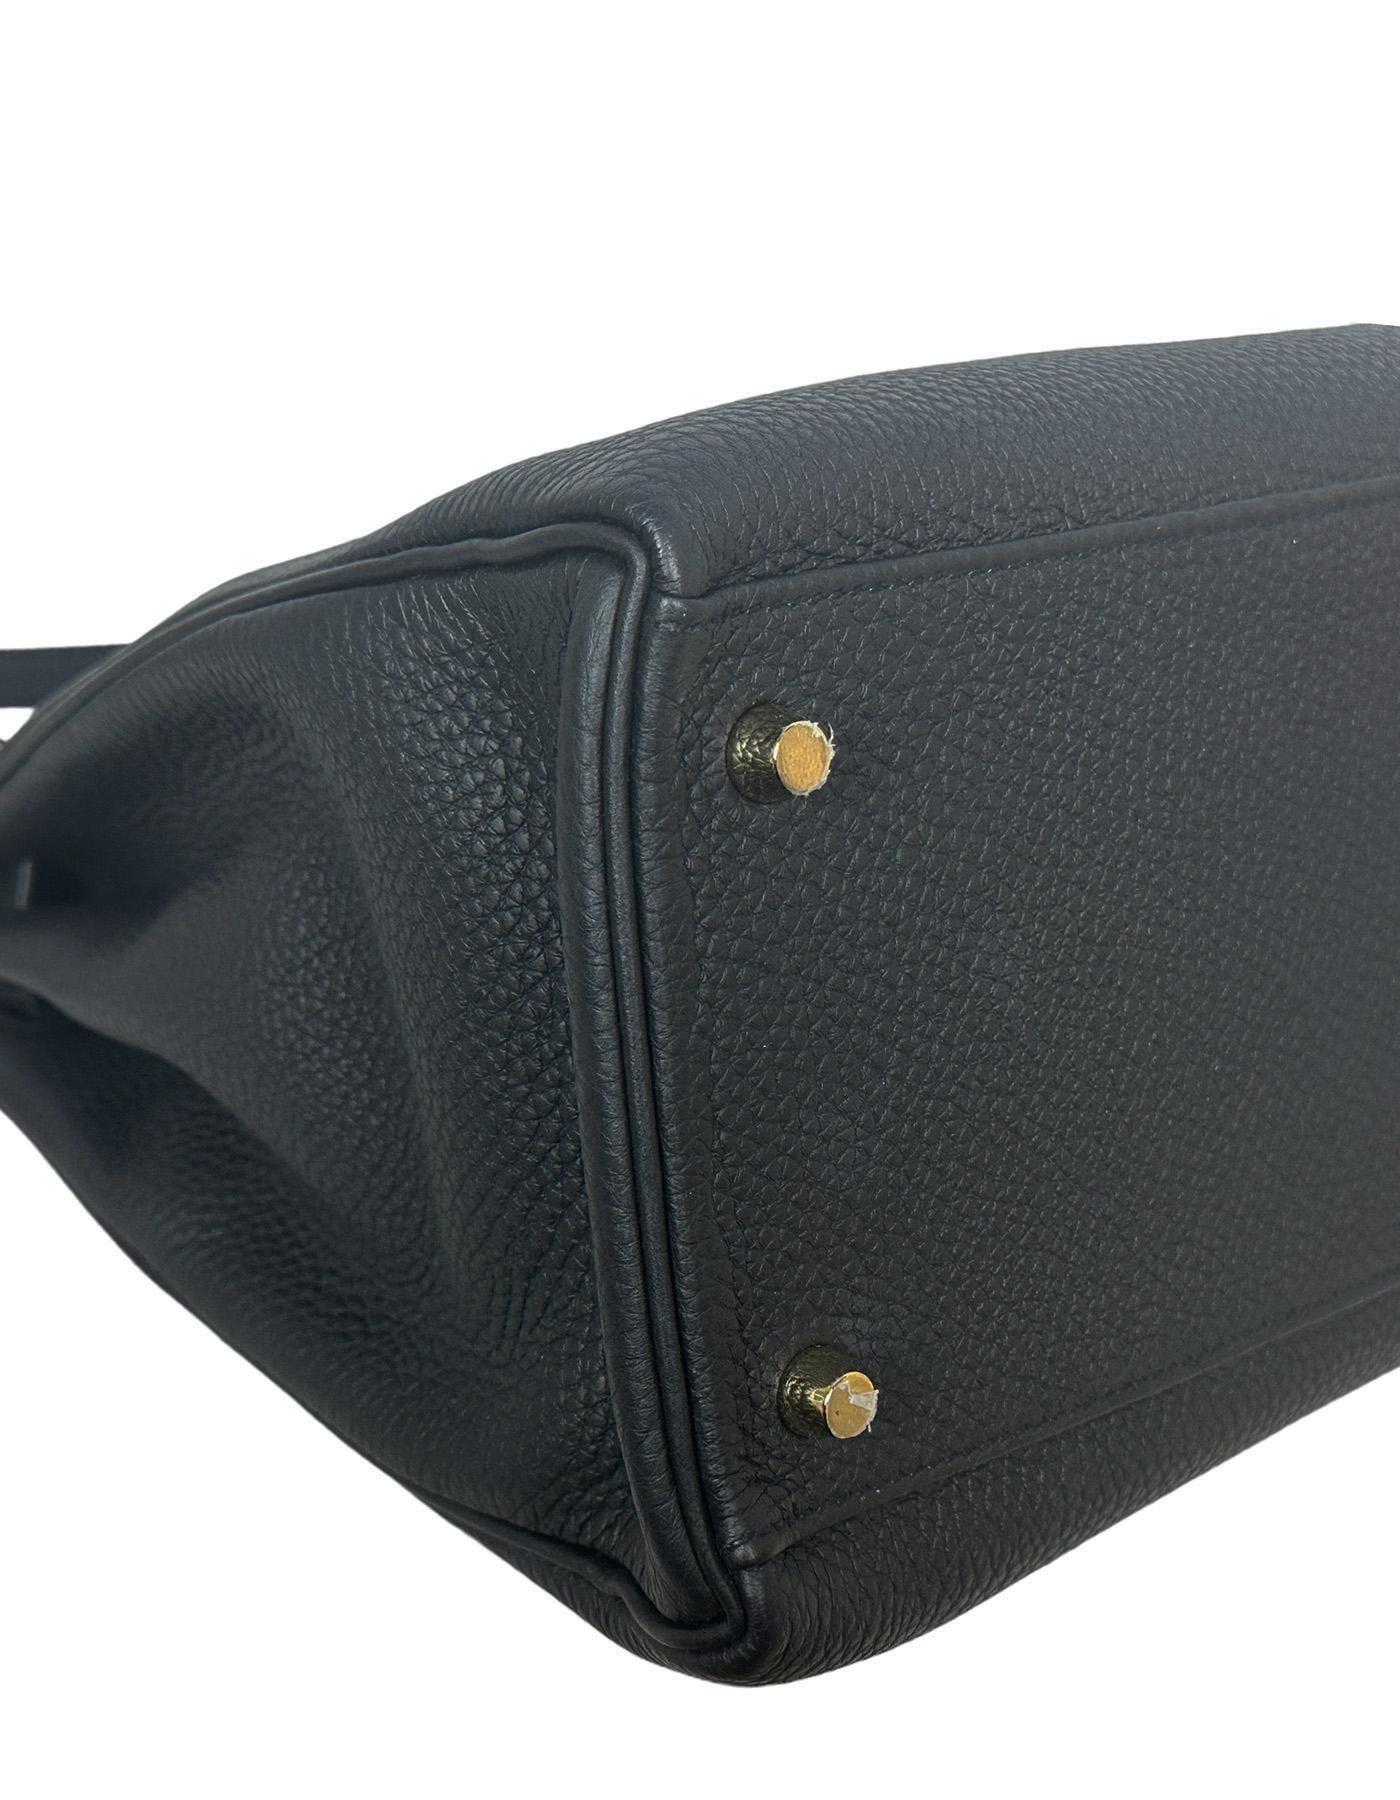 Hermes Black Togo Leather Retourne 35cm Kelly Bag w/ GHW 2